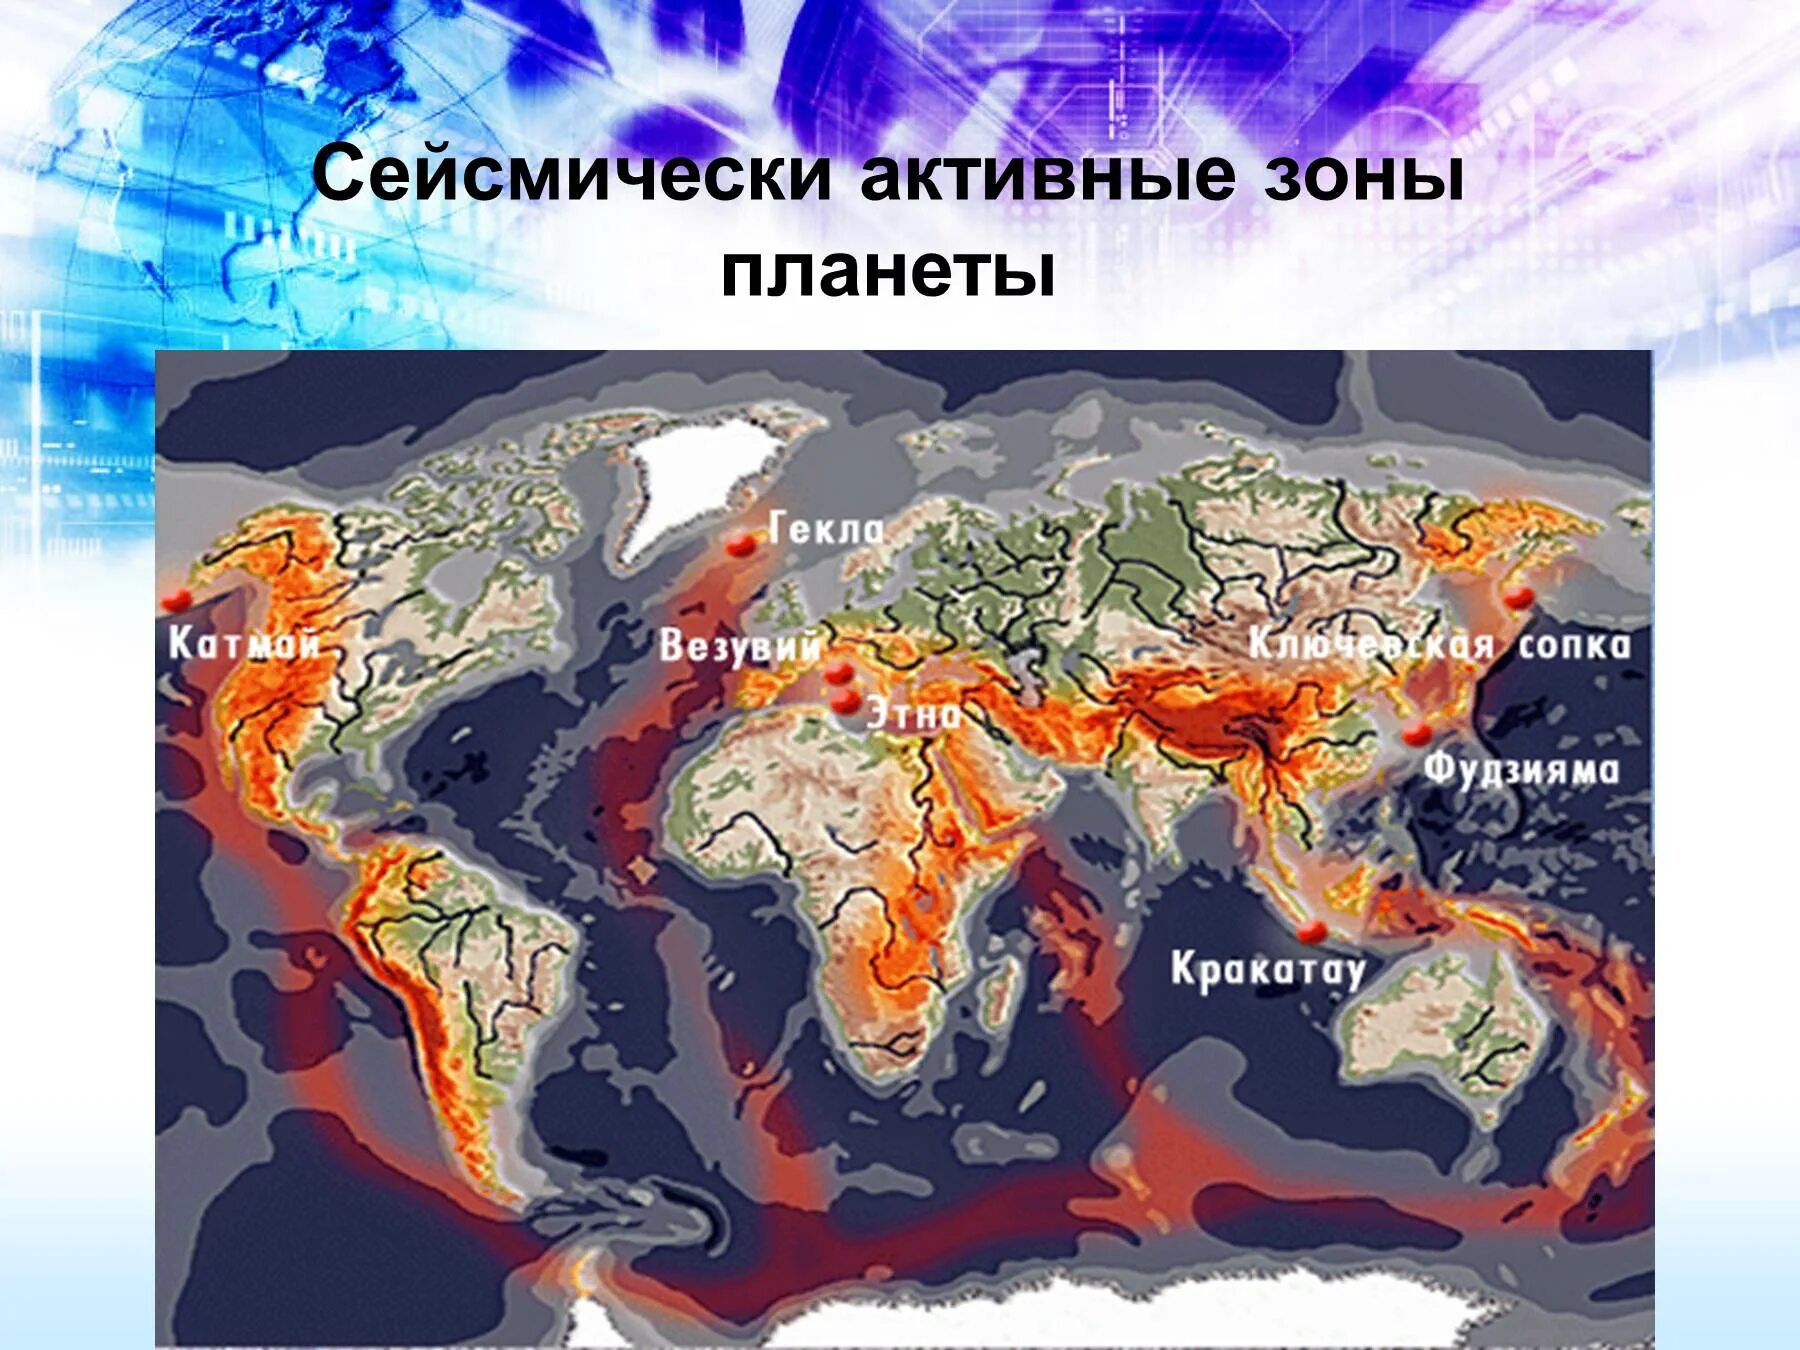 Страны в которых часто происходят землетрясения. Тихоокеанский сейсмический пояс. Зоны сейсмической активности Евразии. Действующие вулканы Евразии на карте.